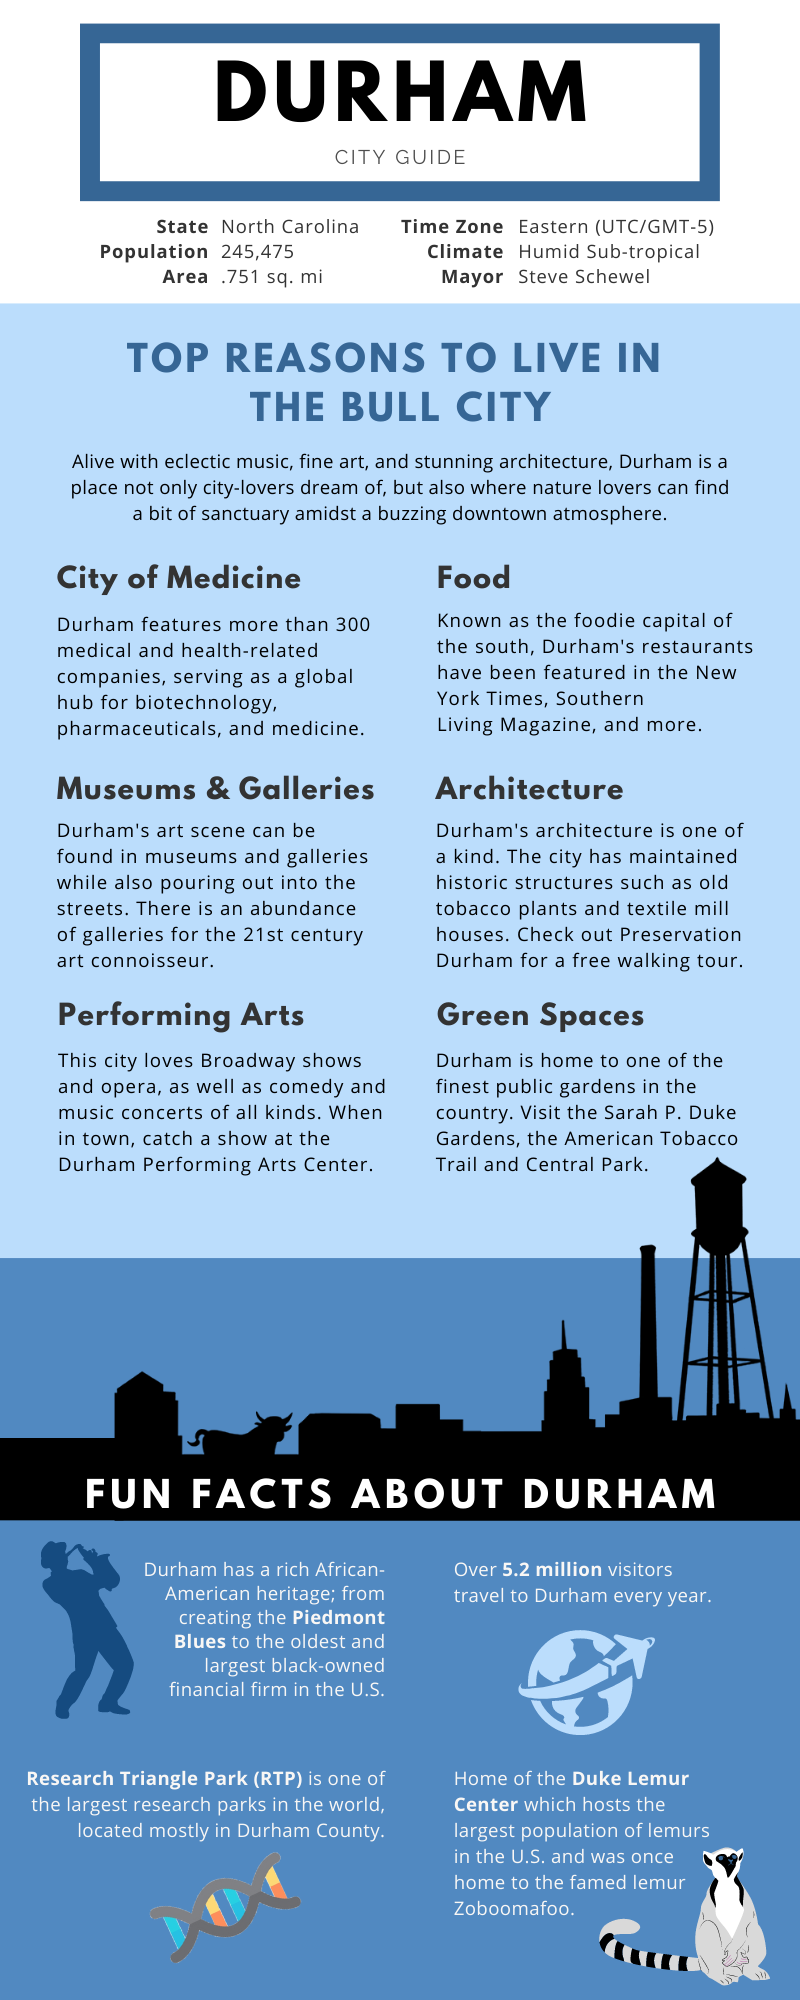 description of Downtown Durham